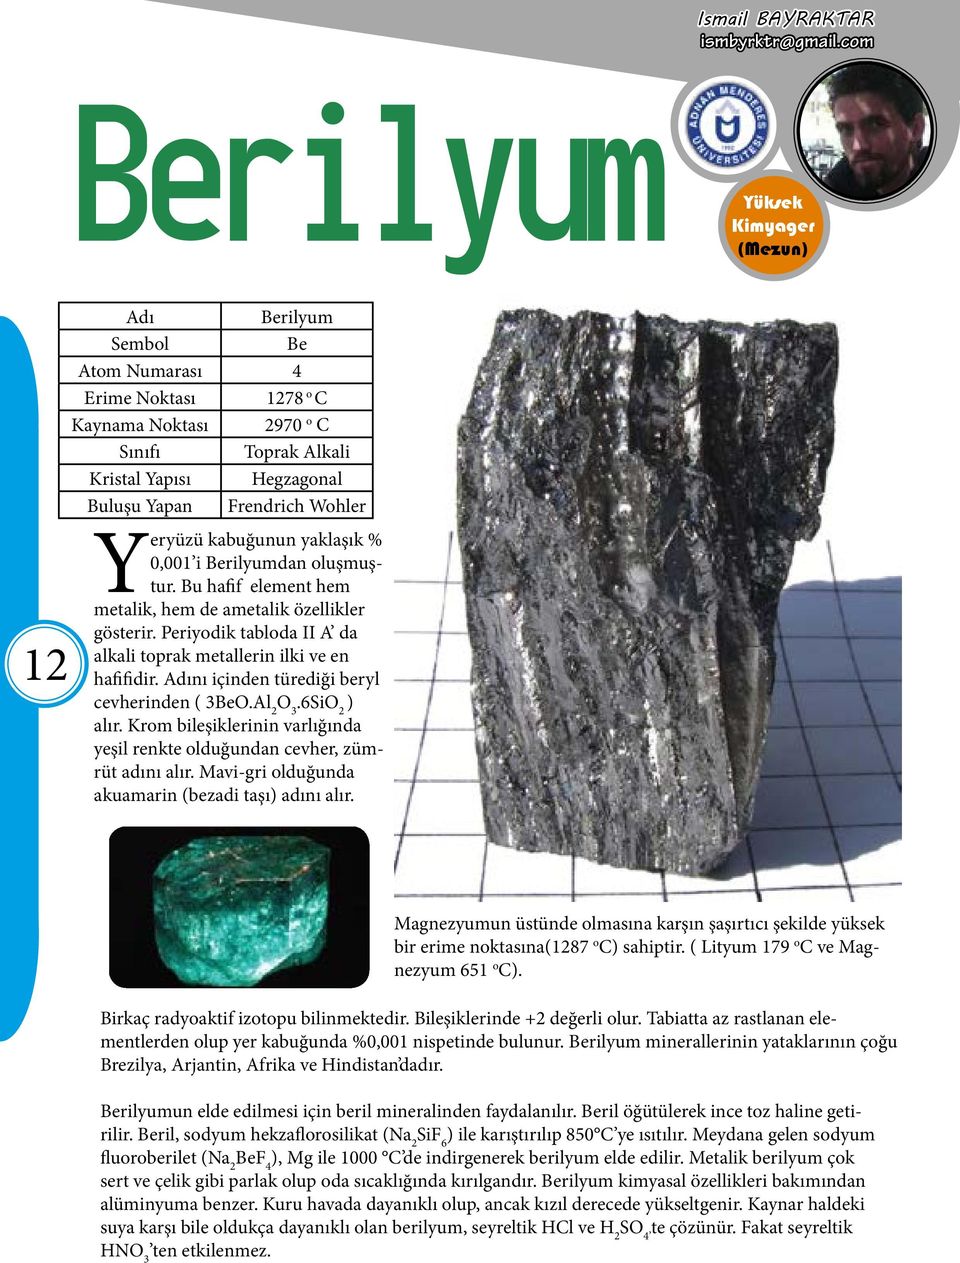 yaklaşık % 0,001 i Berilyumdan oluşmuştur. Bu hafif element hem metalik, hem de ametalik özellikler gösterir. Periyodik tabloda II A da alkali toprak metallerin ilki ve en hafifidir.